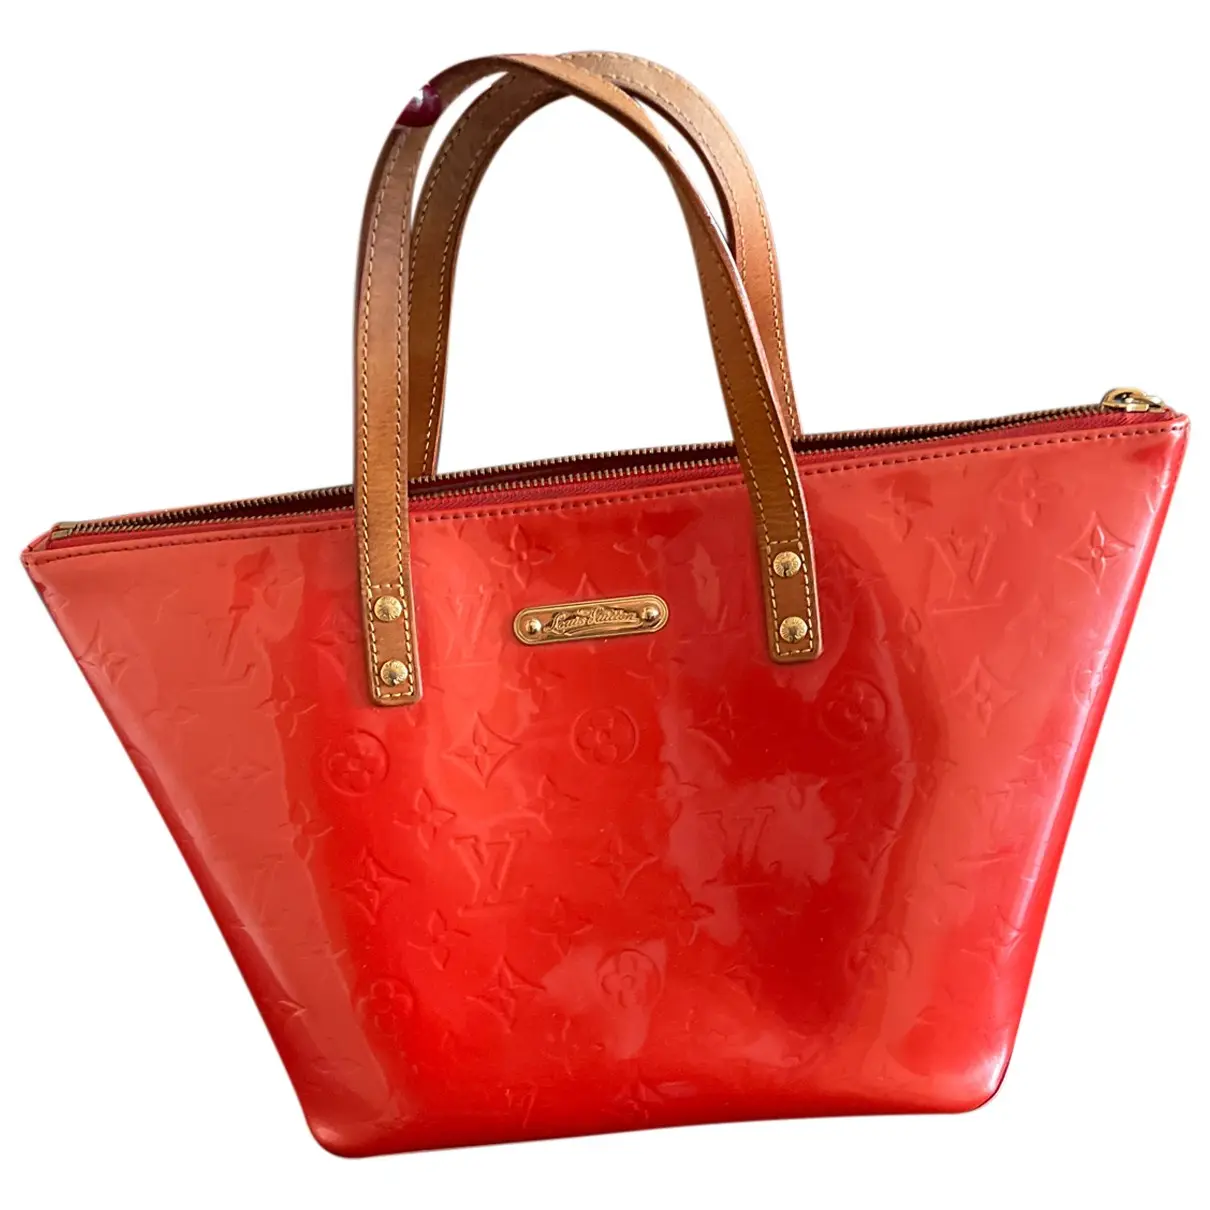 Bellevue patent leather handbag Louis Vuitton